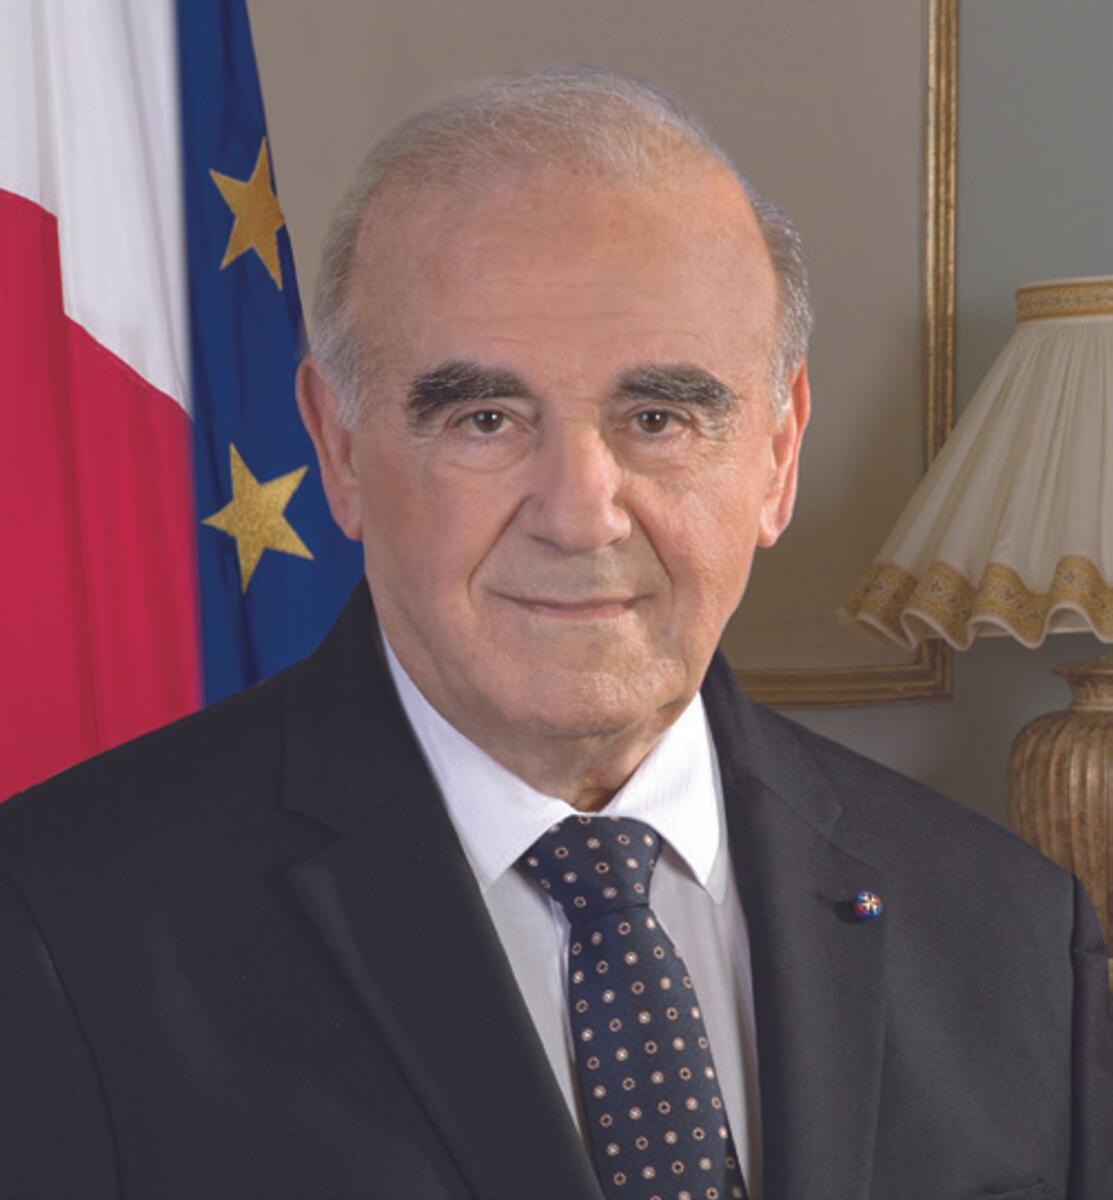 George Vella, President of Malta.